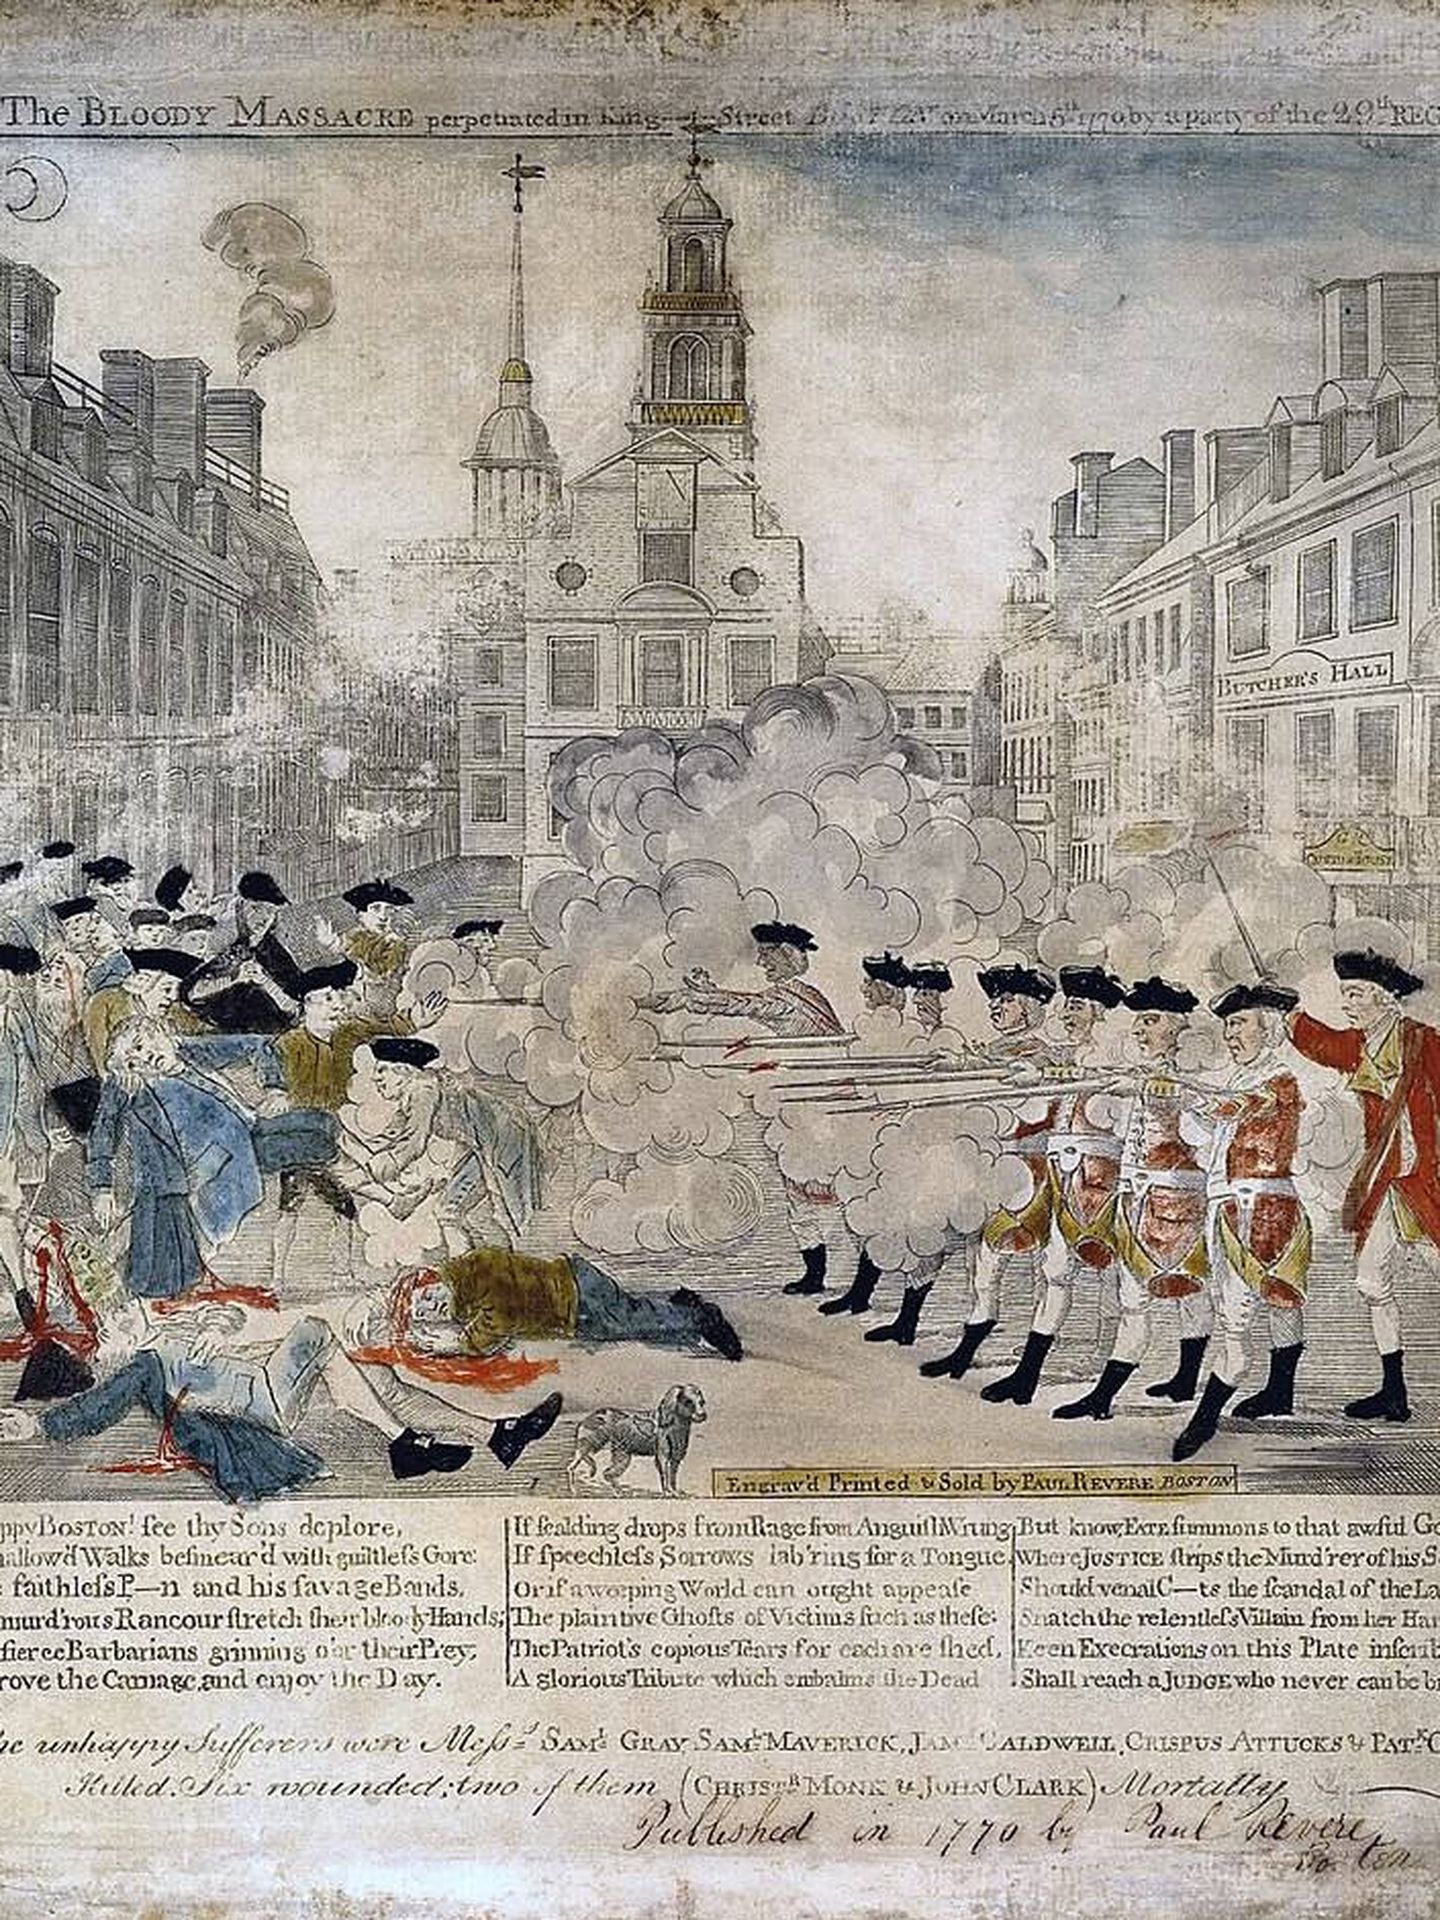 Representación de la matanza de Boston realizada en 1772. (Wikipedia)